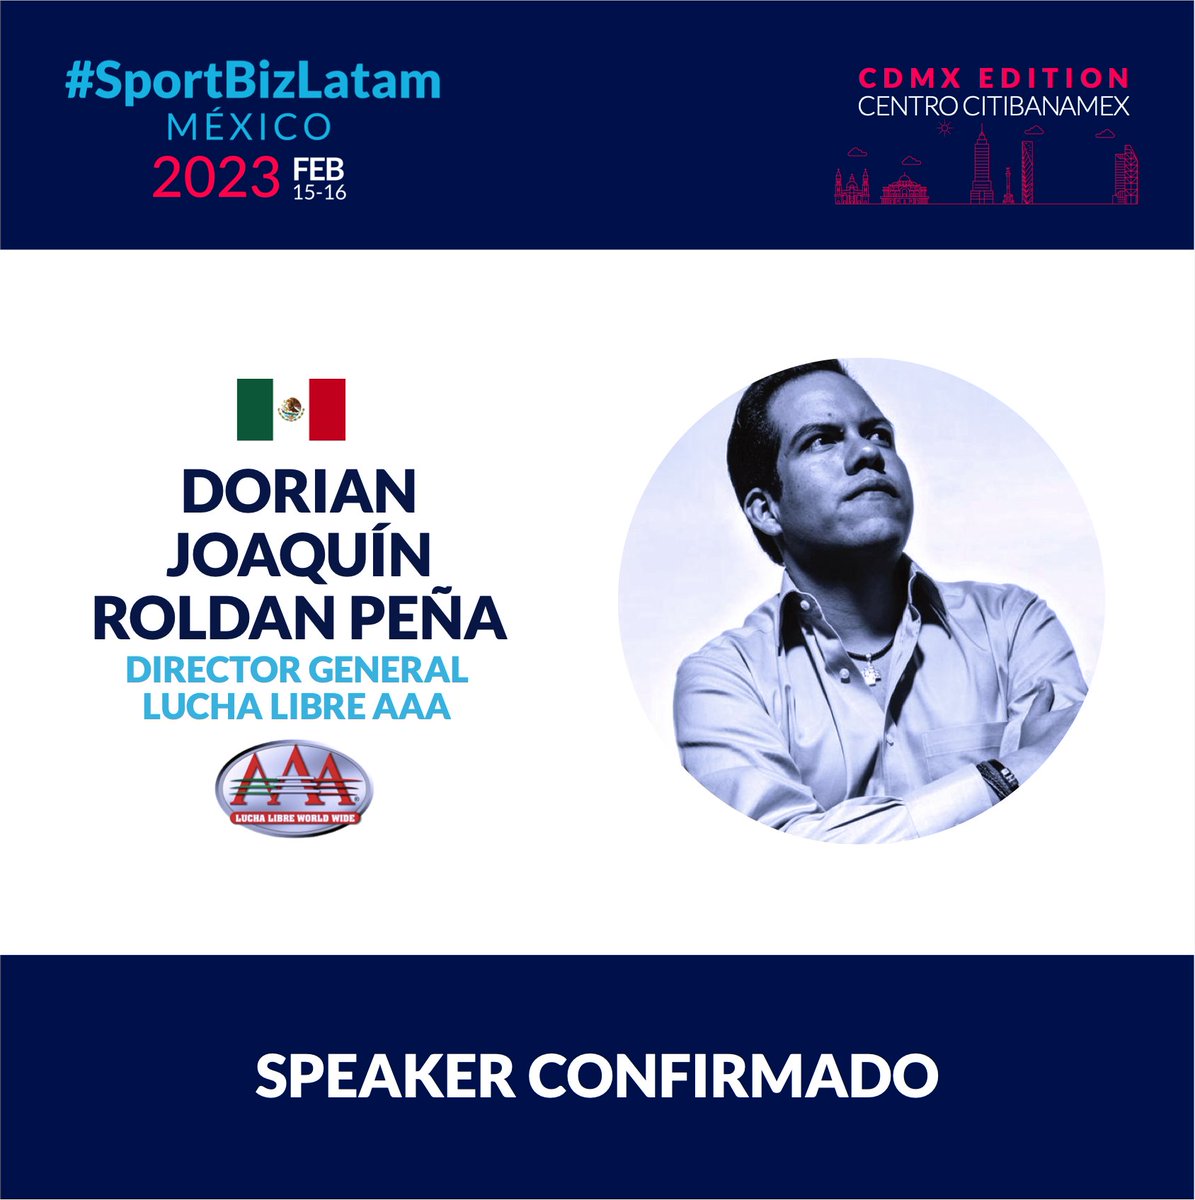 Se suma como Speaker de #SportBizLatam México @dorianroldan , Director General de @luchalibreaaa. La industria deportiva se reúne 15&16 de Febrero en el Centro Citibanamex, Ciudad de México! #SPORTBIZ #LUCHALIBRE